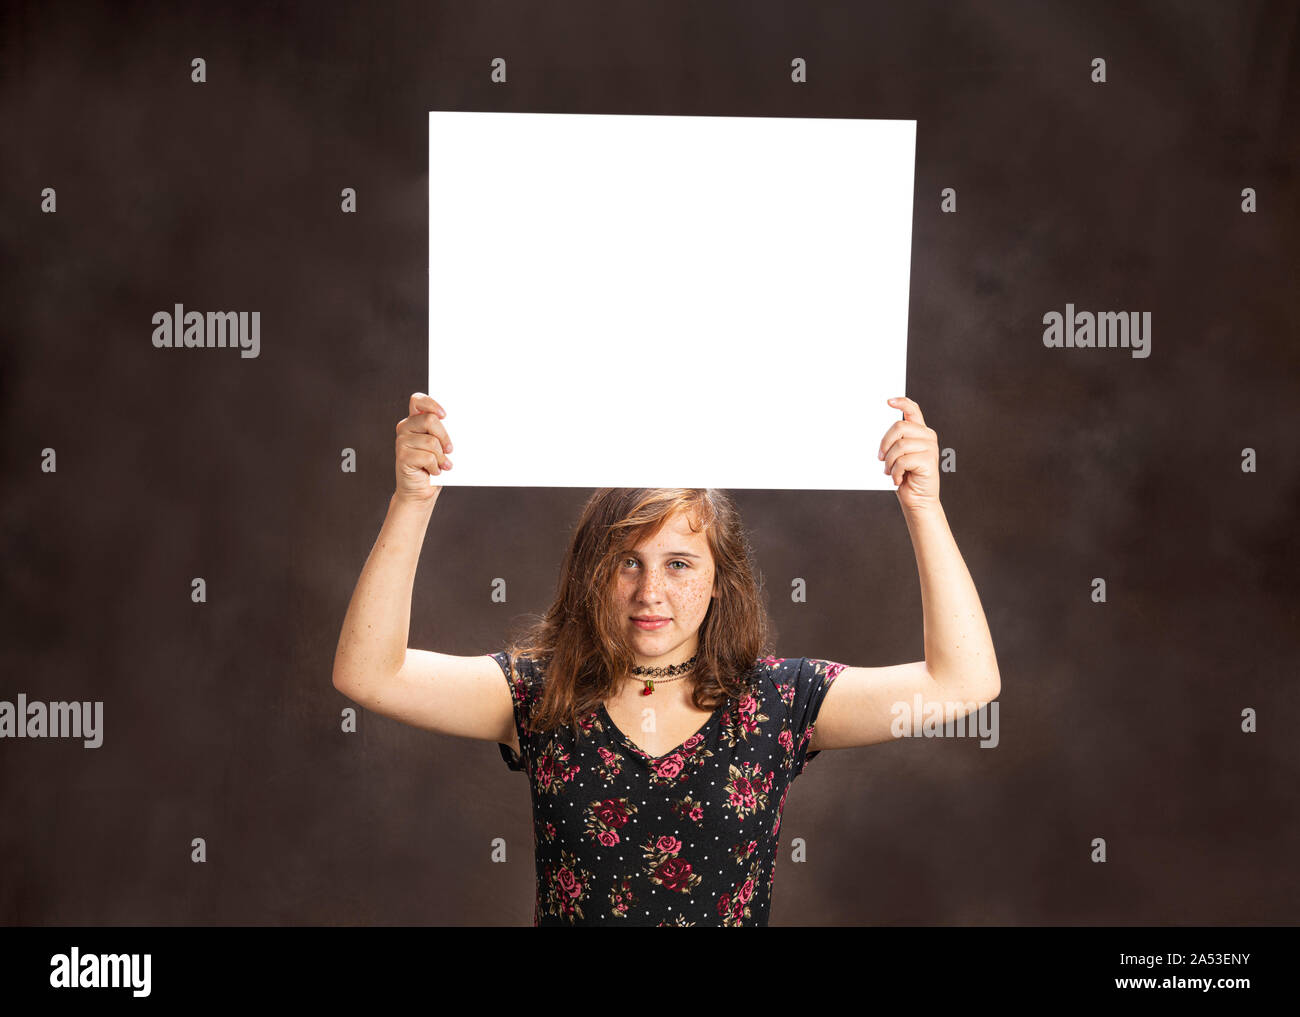 Horizontale studio Aufnahme eines ernsthaften Suchen vor - jugendlich Mädchen mit Sommersprossen, die eine leere weiße Zeichen auf dem Kopf. Braunen Hintergrund. Kopieren Sie Platz. Stockfoto